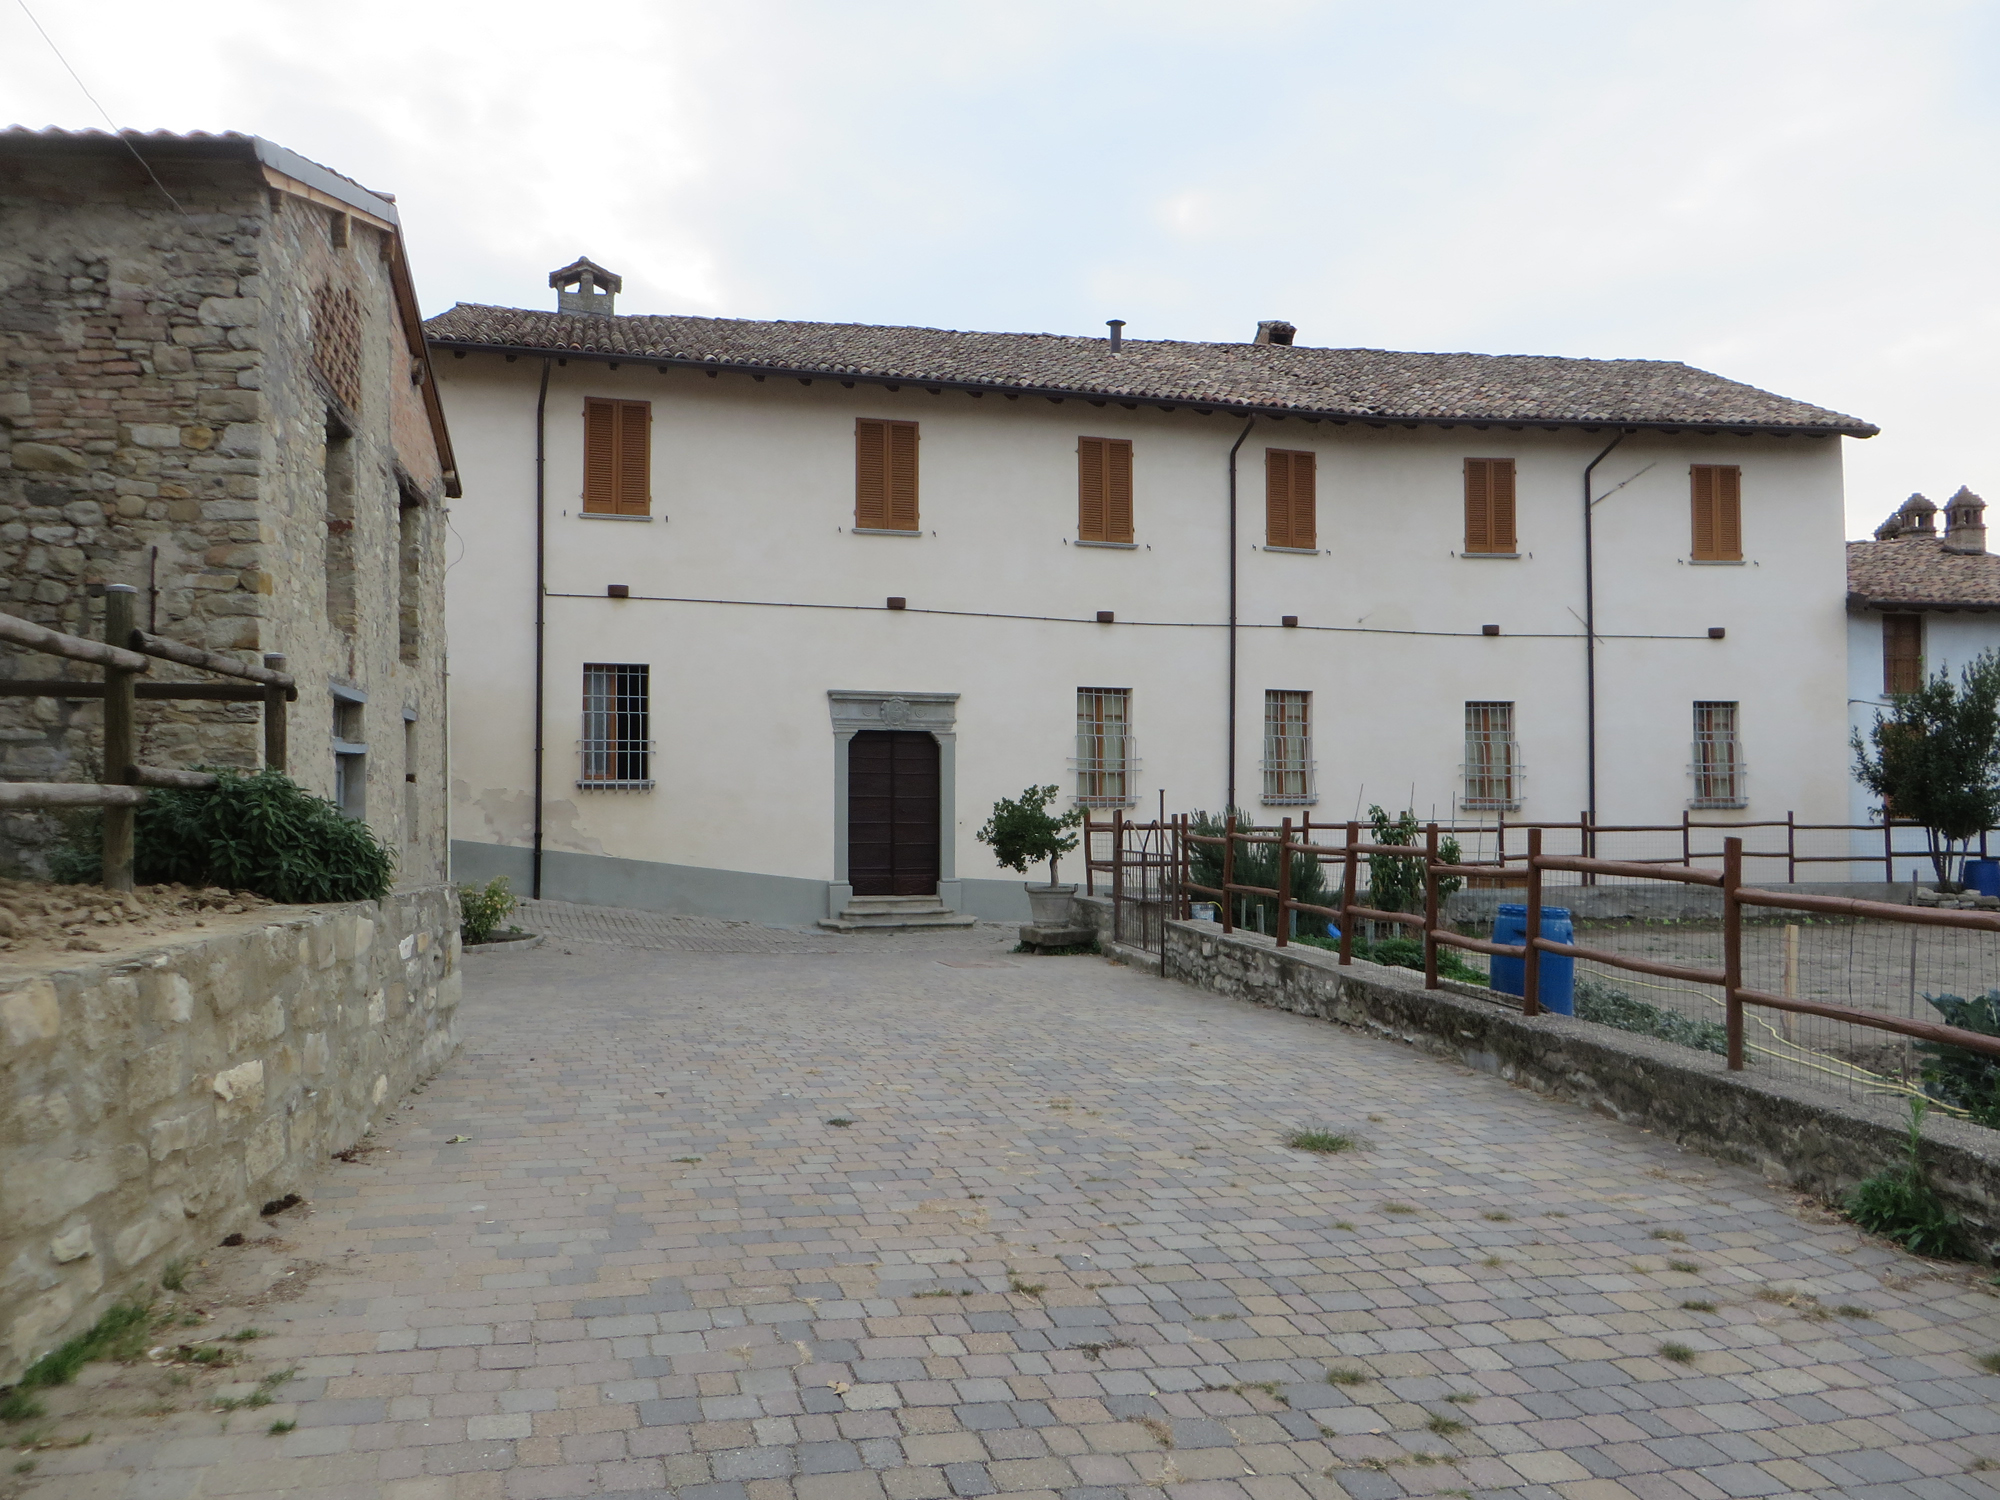 Palazzo Malaspina (palazzo) - Bagnaria (PV) 